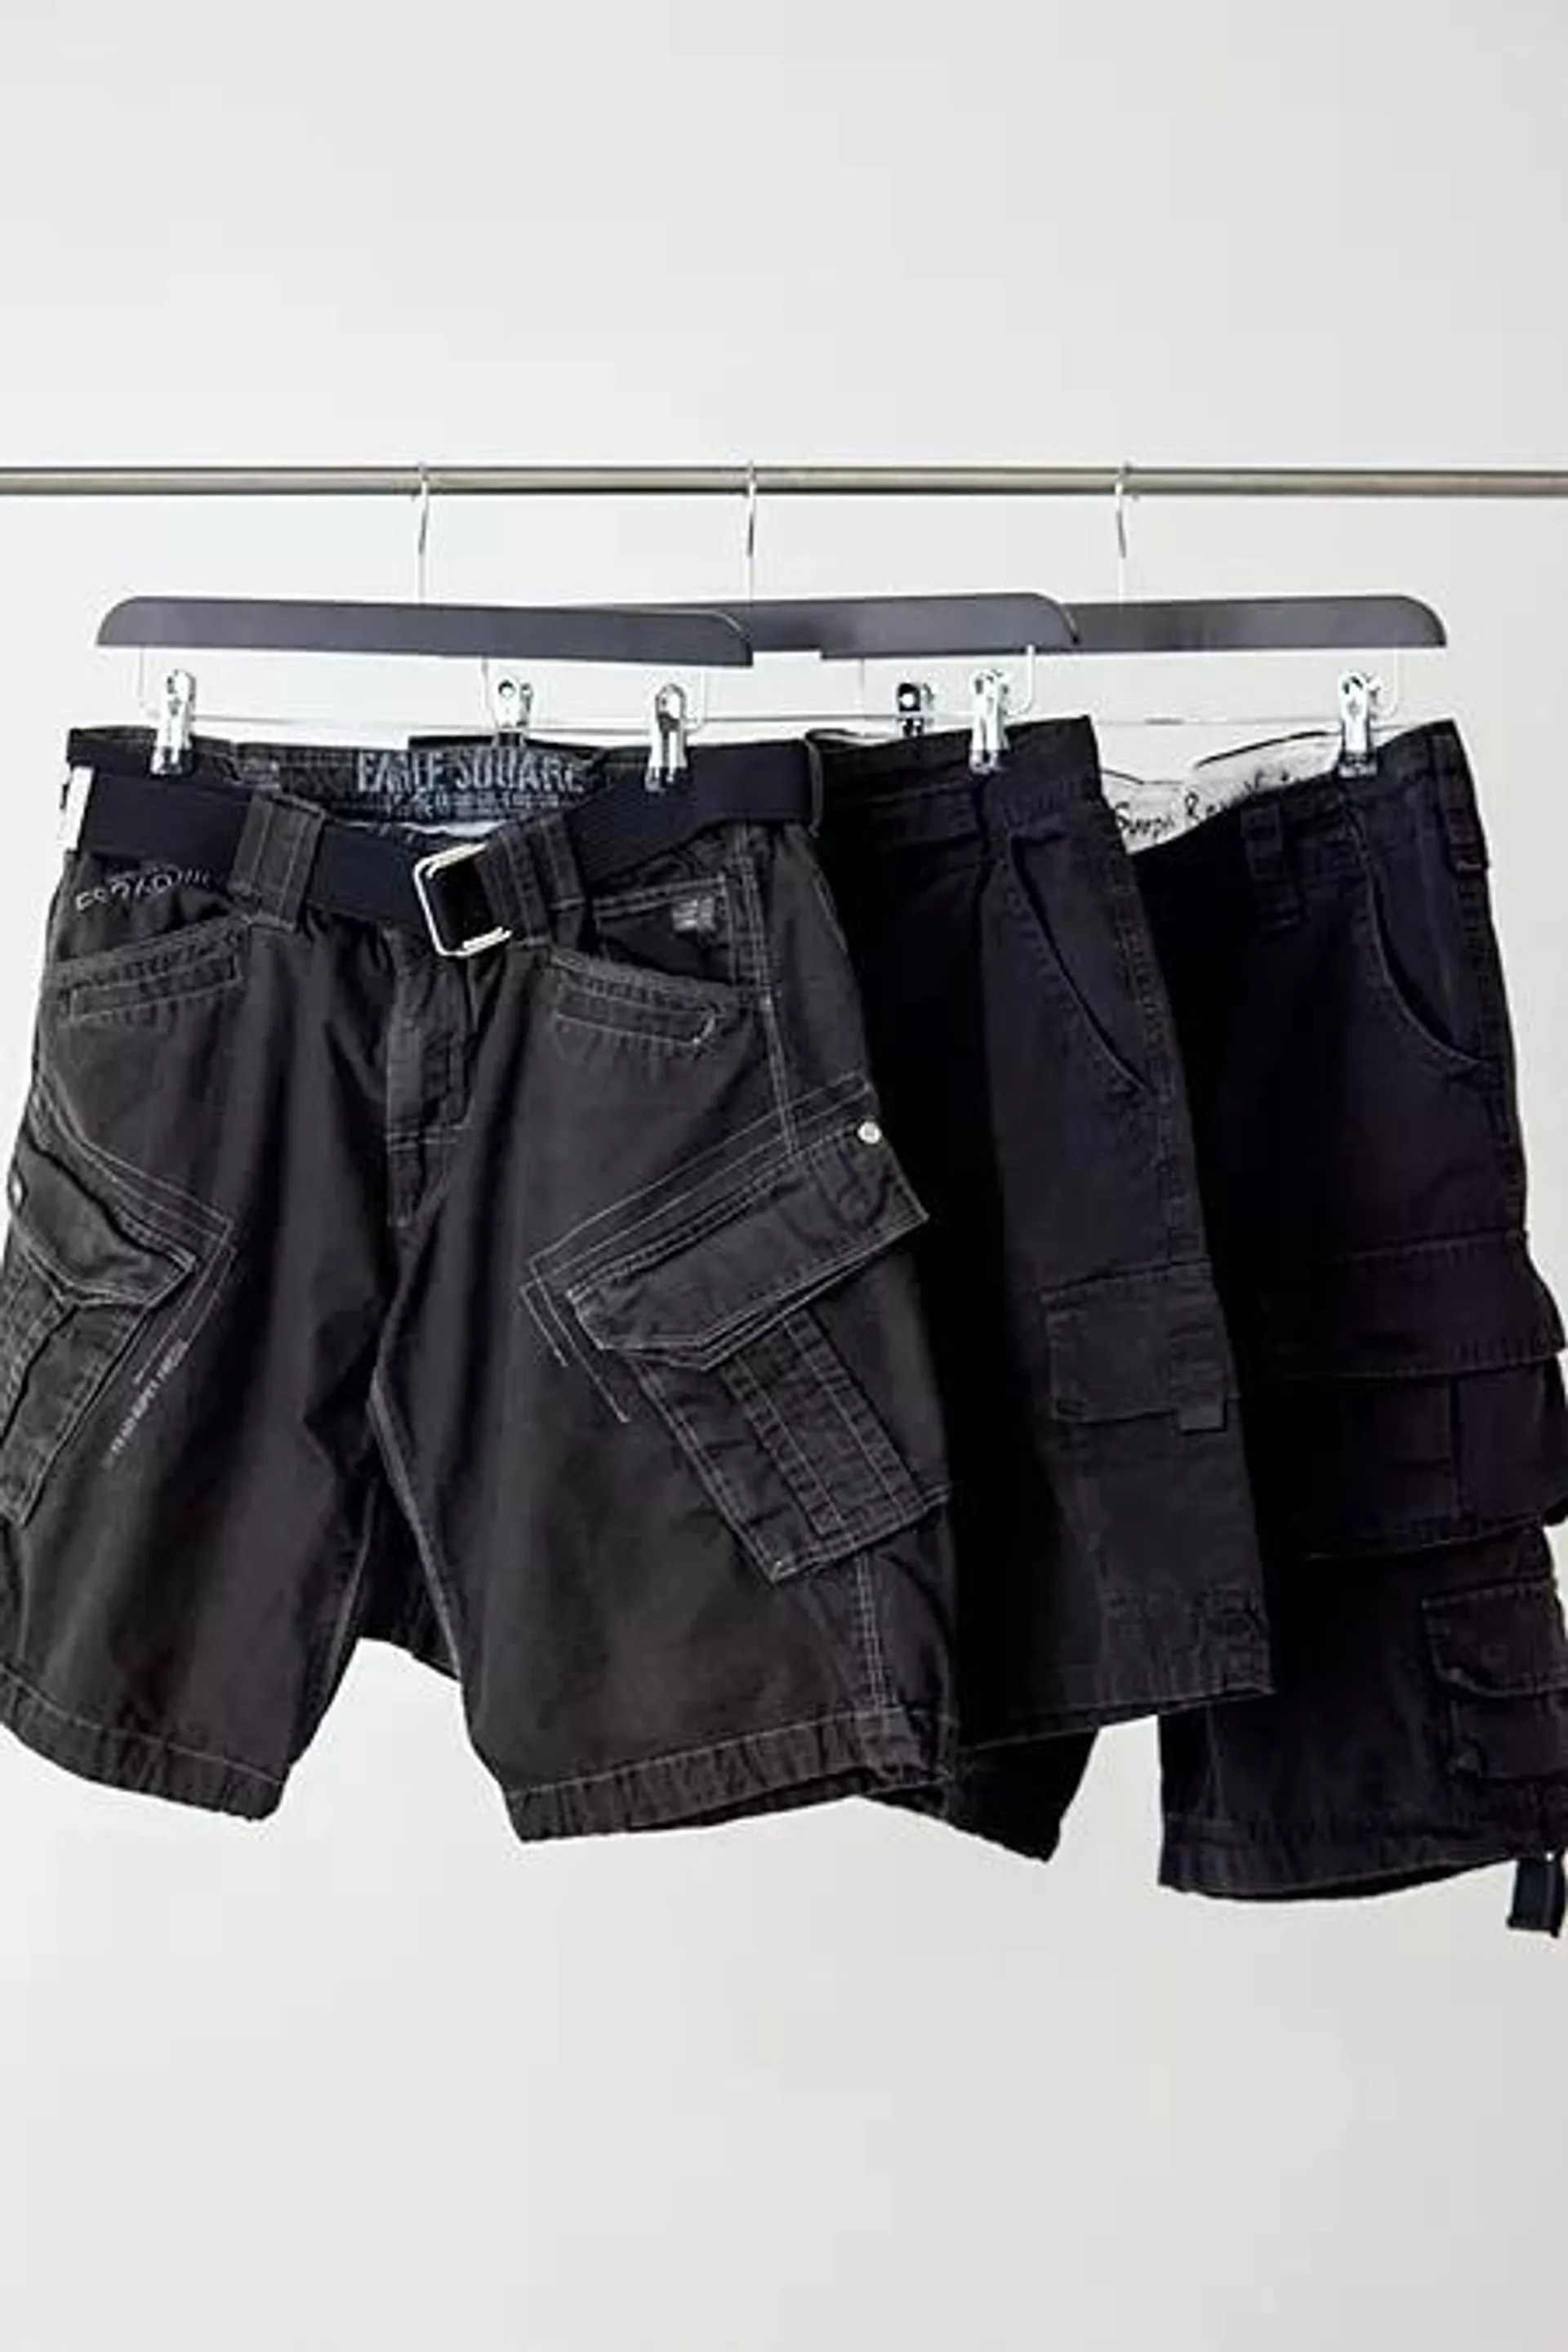 Urban Renewal Vintage Black Cargo Shorts